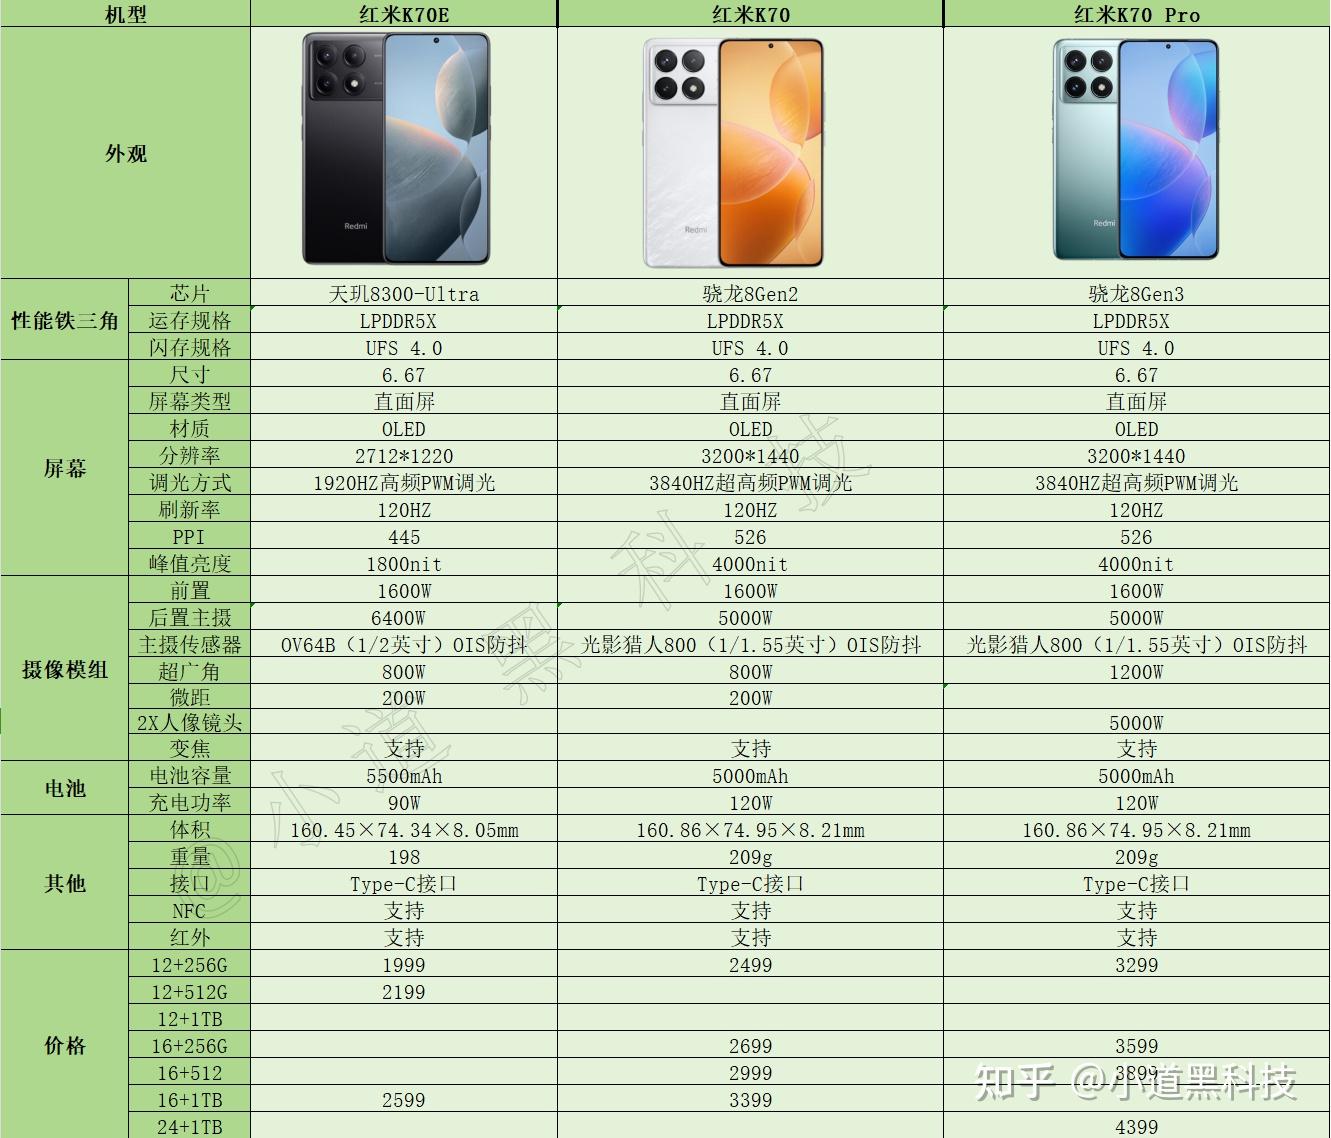 11月29日发布的红米k70系列手机,有哪些特点?哪一个型号最值得买?